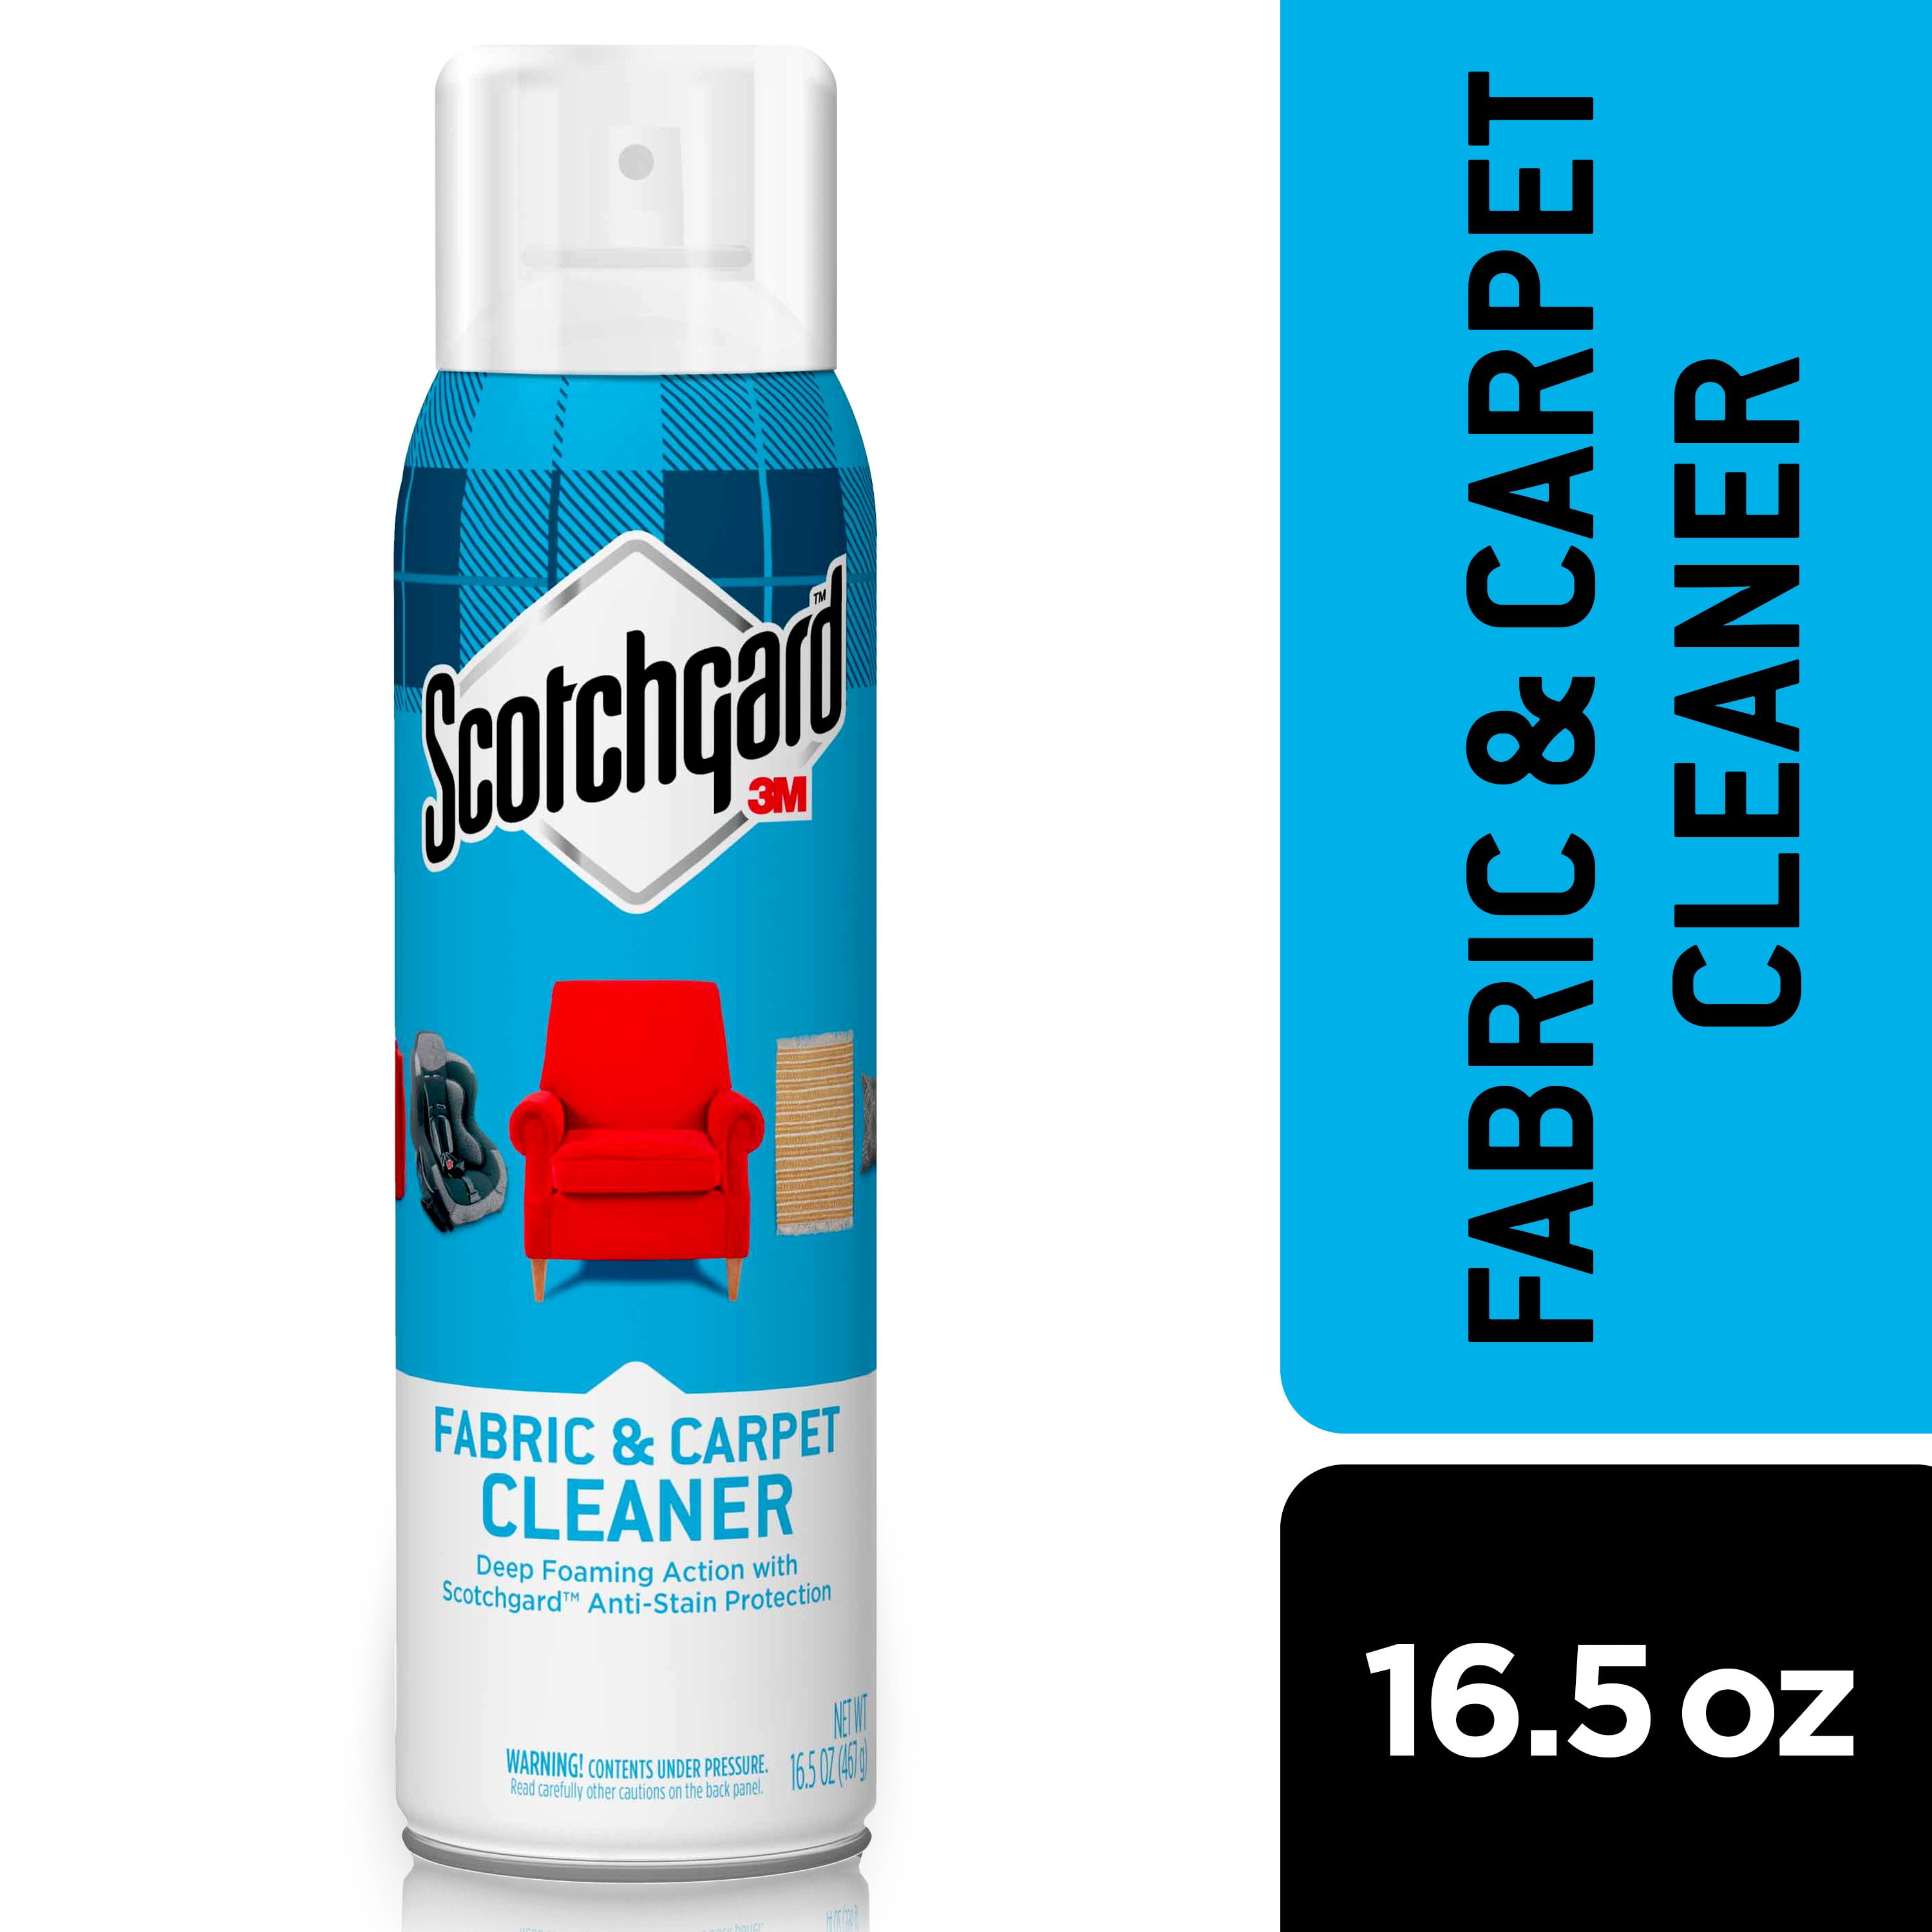 Limpiador de Telas y Tapices Scotchgard™ 396 g, 1 Unidad